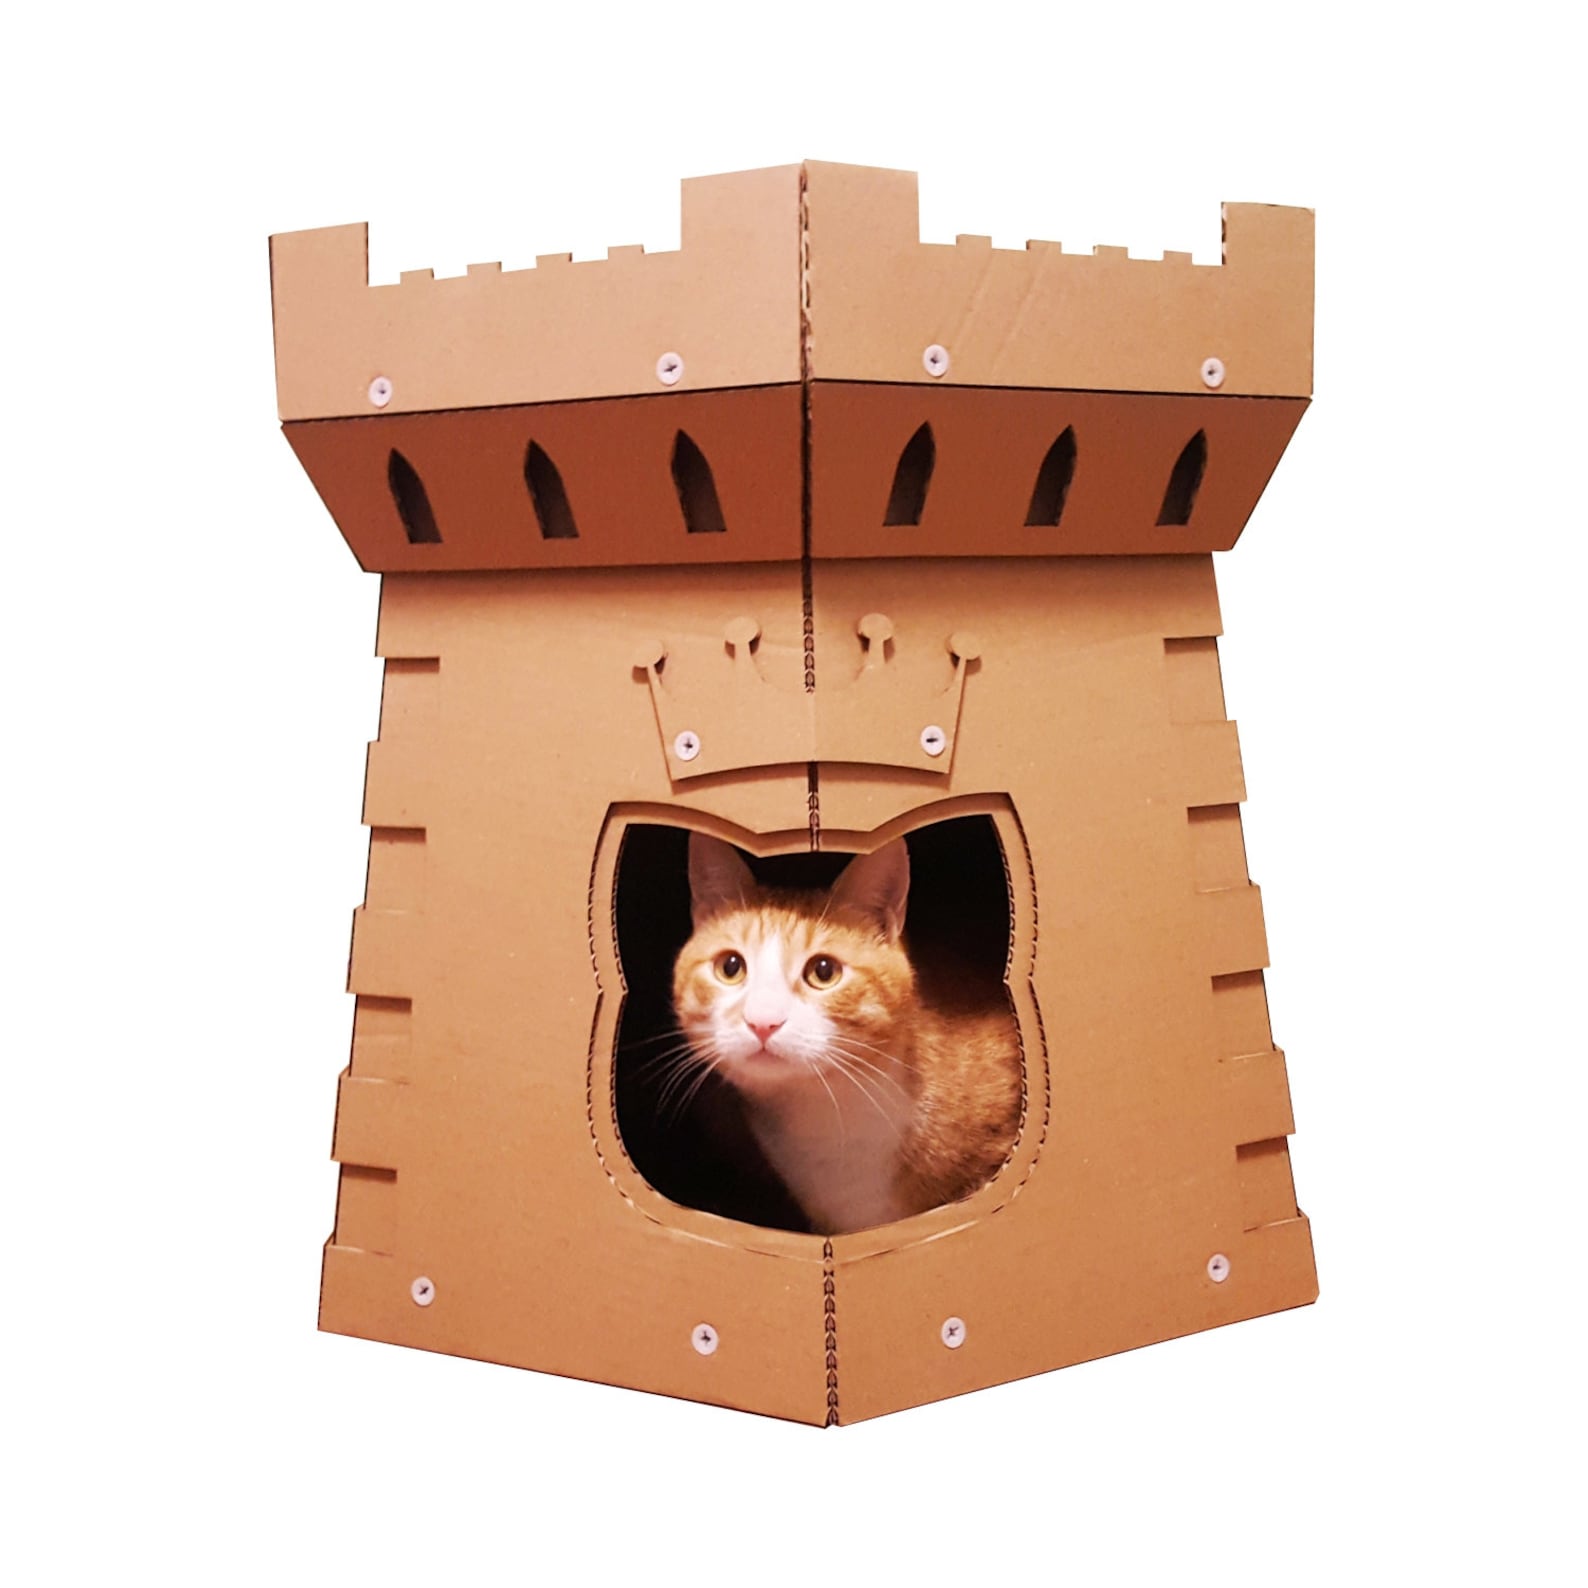 Картон кэт. Картон Кэт картон Кэт. Домики для котов из картона. Домик для кота из коробки. Домик для кошки из картона.